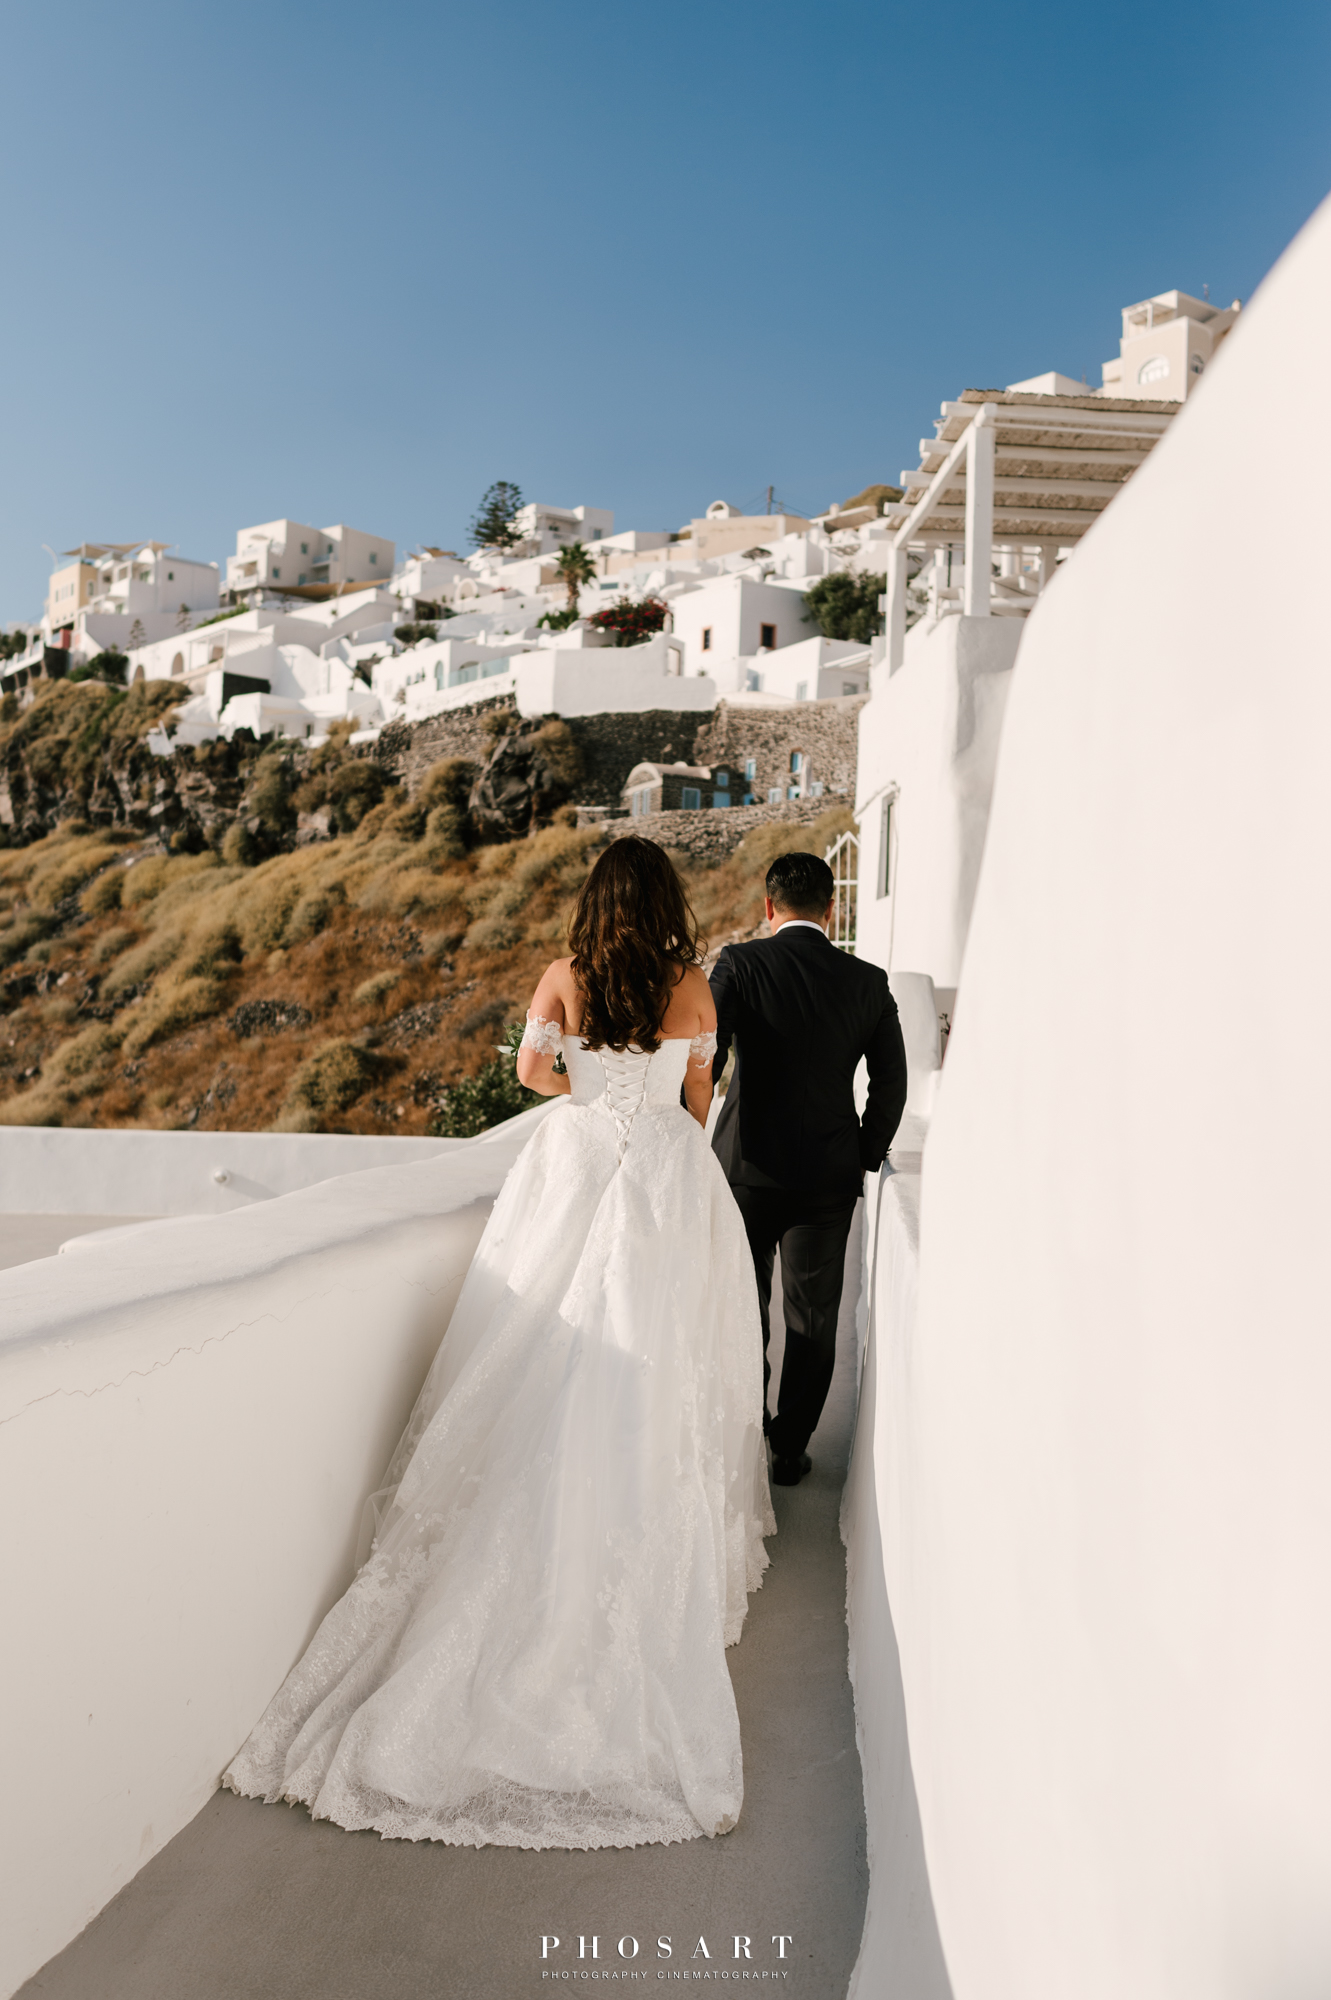 Α newlywed couple walking in the alleys of the caldera, Santorini, in a black and white photo